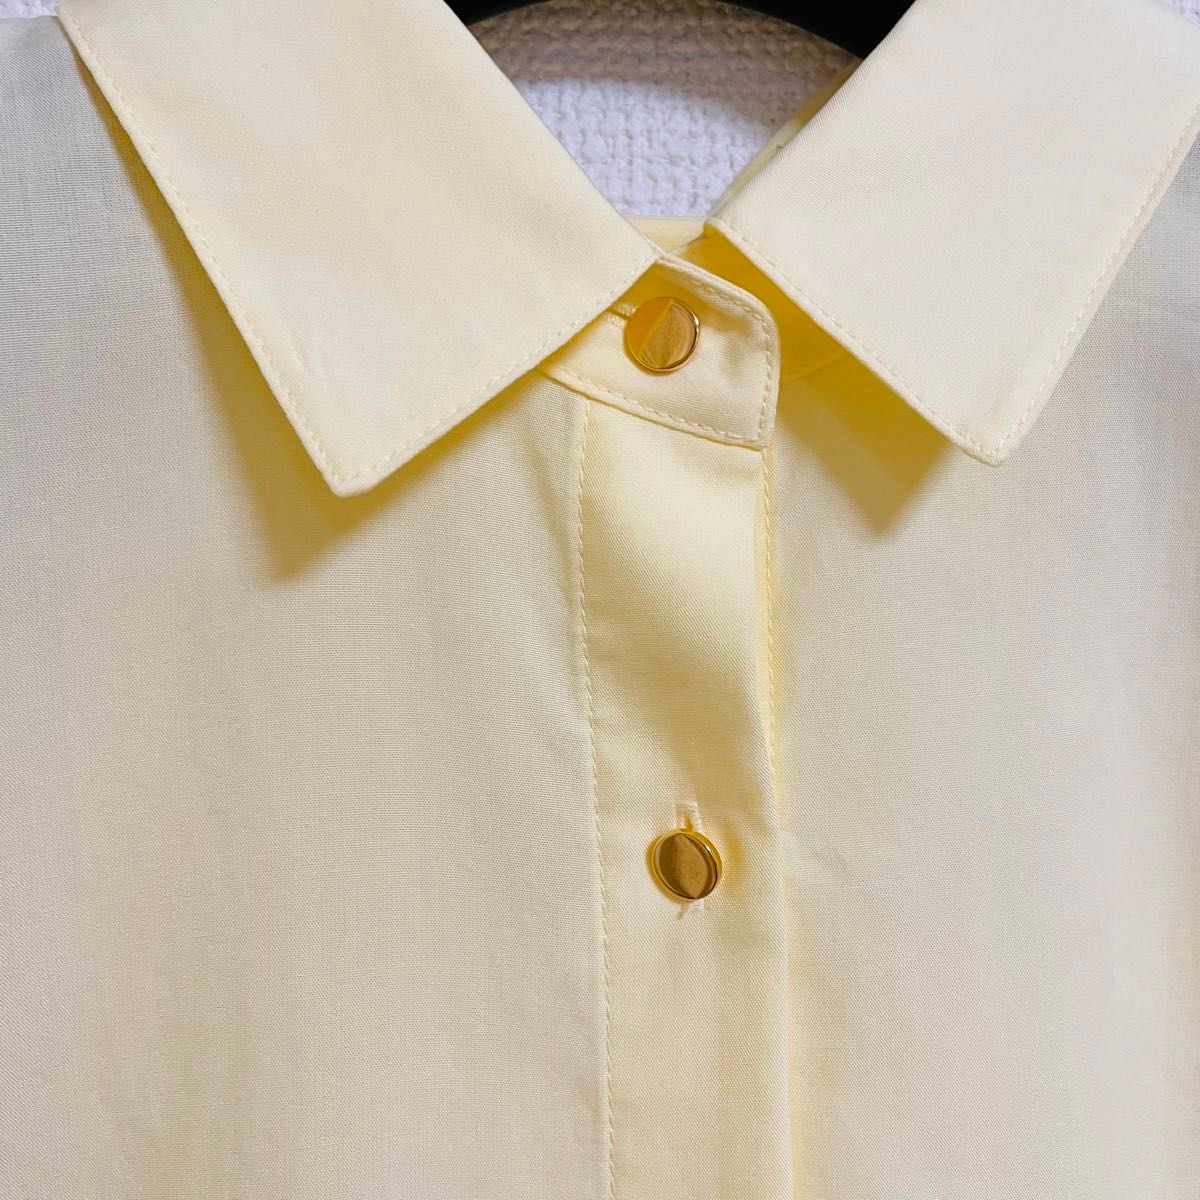 【新品】NOLLEY'S ノーリーズ メタルボタンシャツ ブラウス ライトイエロー 春色 金ボタン シャツ 長袖 とろみシャツ